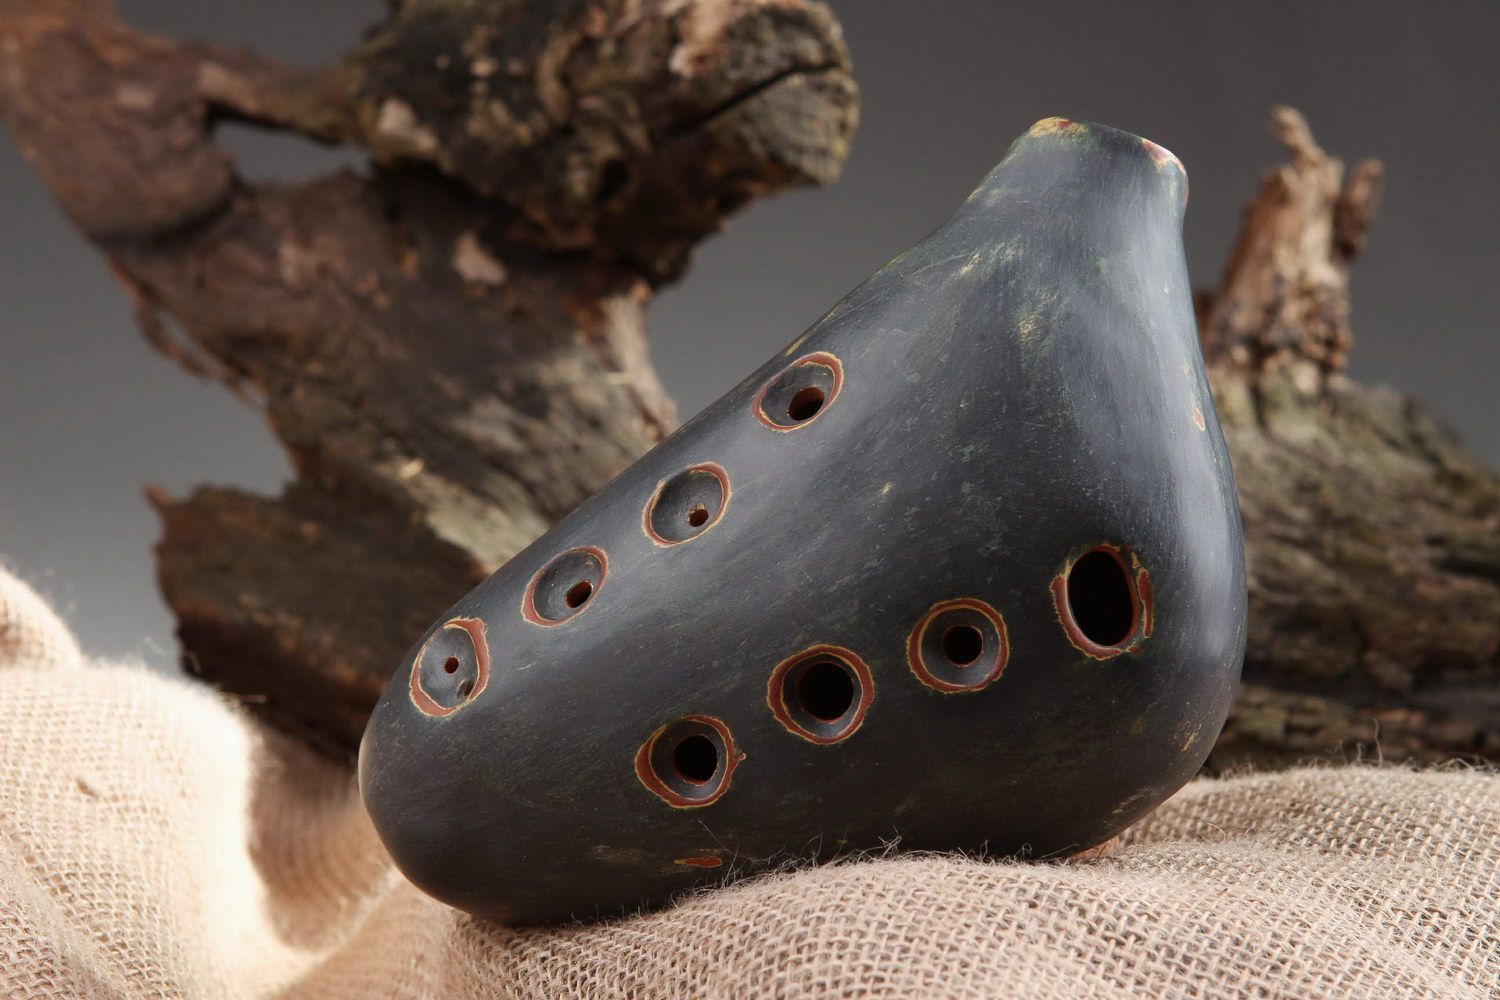 Ocarina, globular flute made of clay with 8 holes photo 1